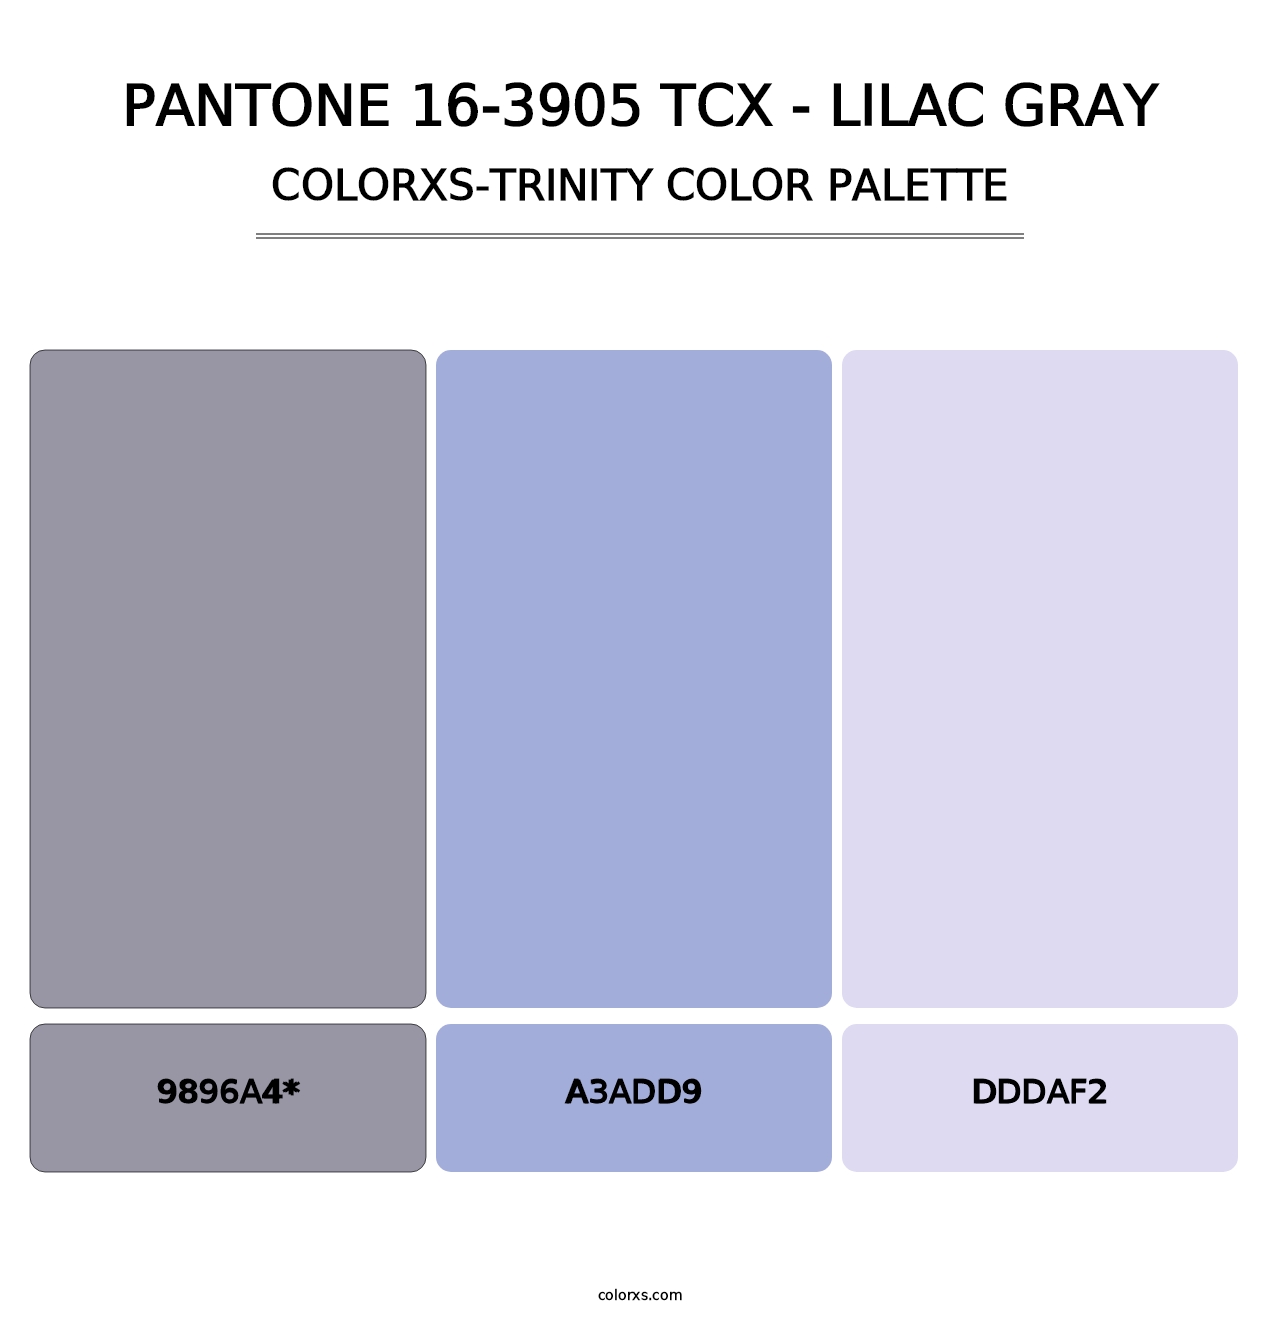 PANTONE 16-3905 TCX - Lilac Gray - Colorxs Trinity Palette